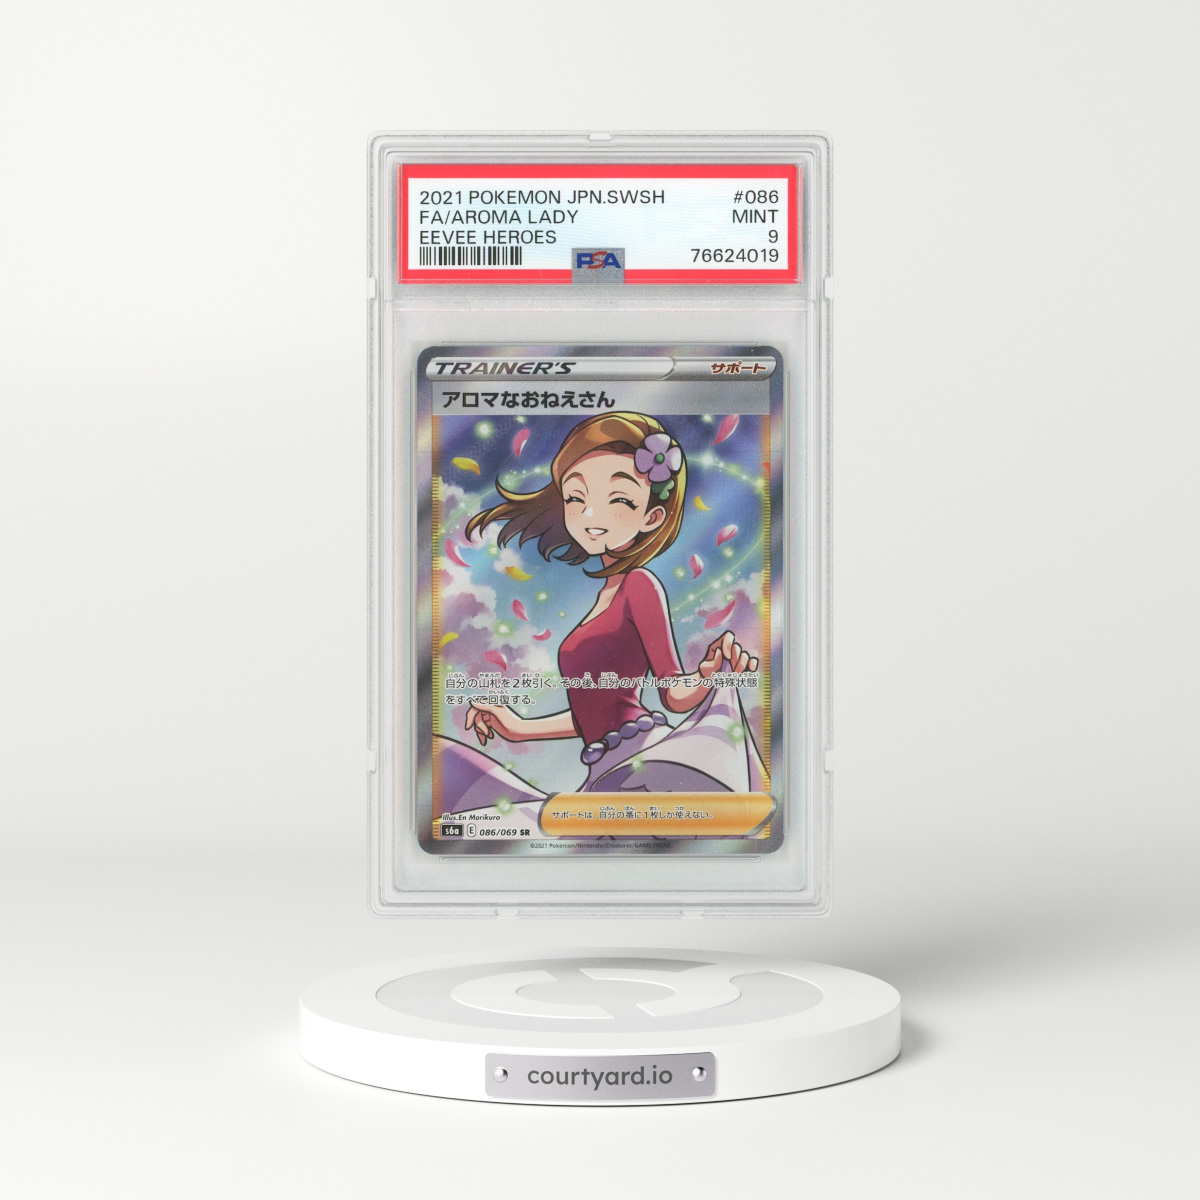 Genesect EX 2013 Pokemon B & W Plasma Blast Pokemon TCG Card #11 - Graded  Mint 9 (PSA)